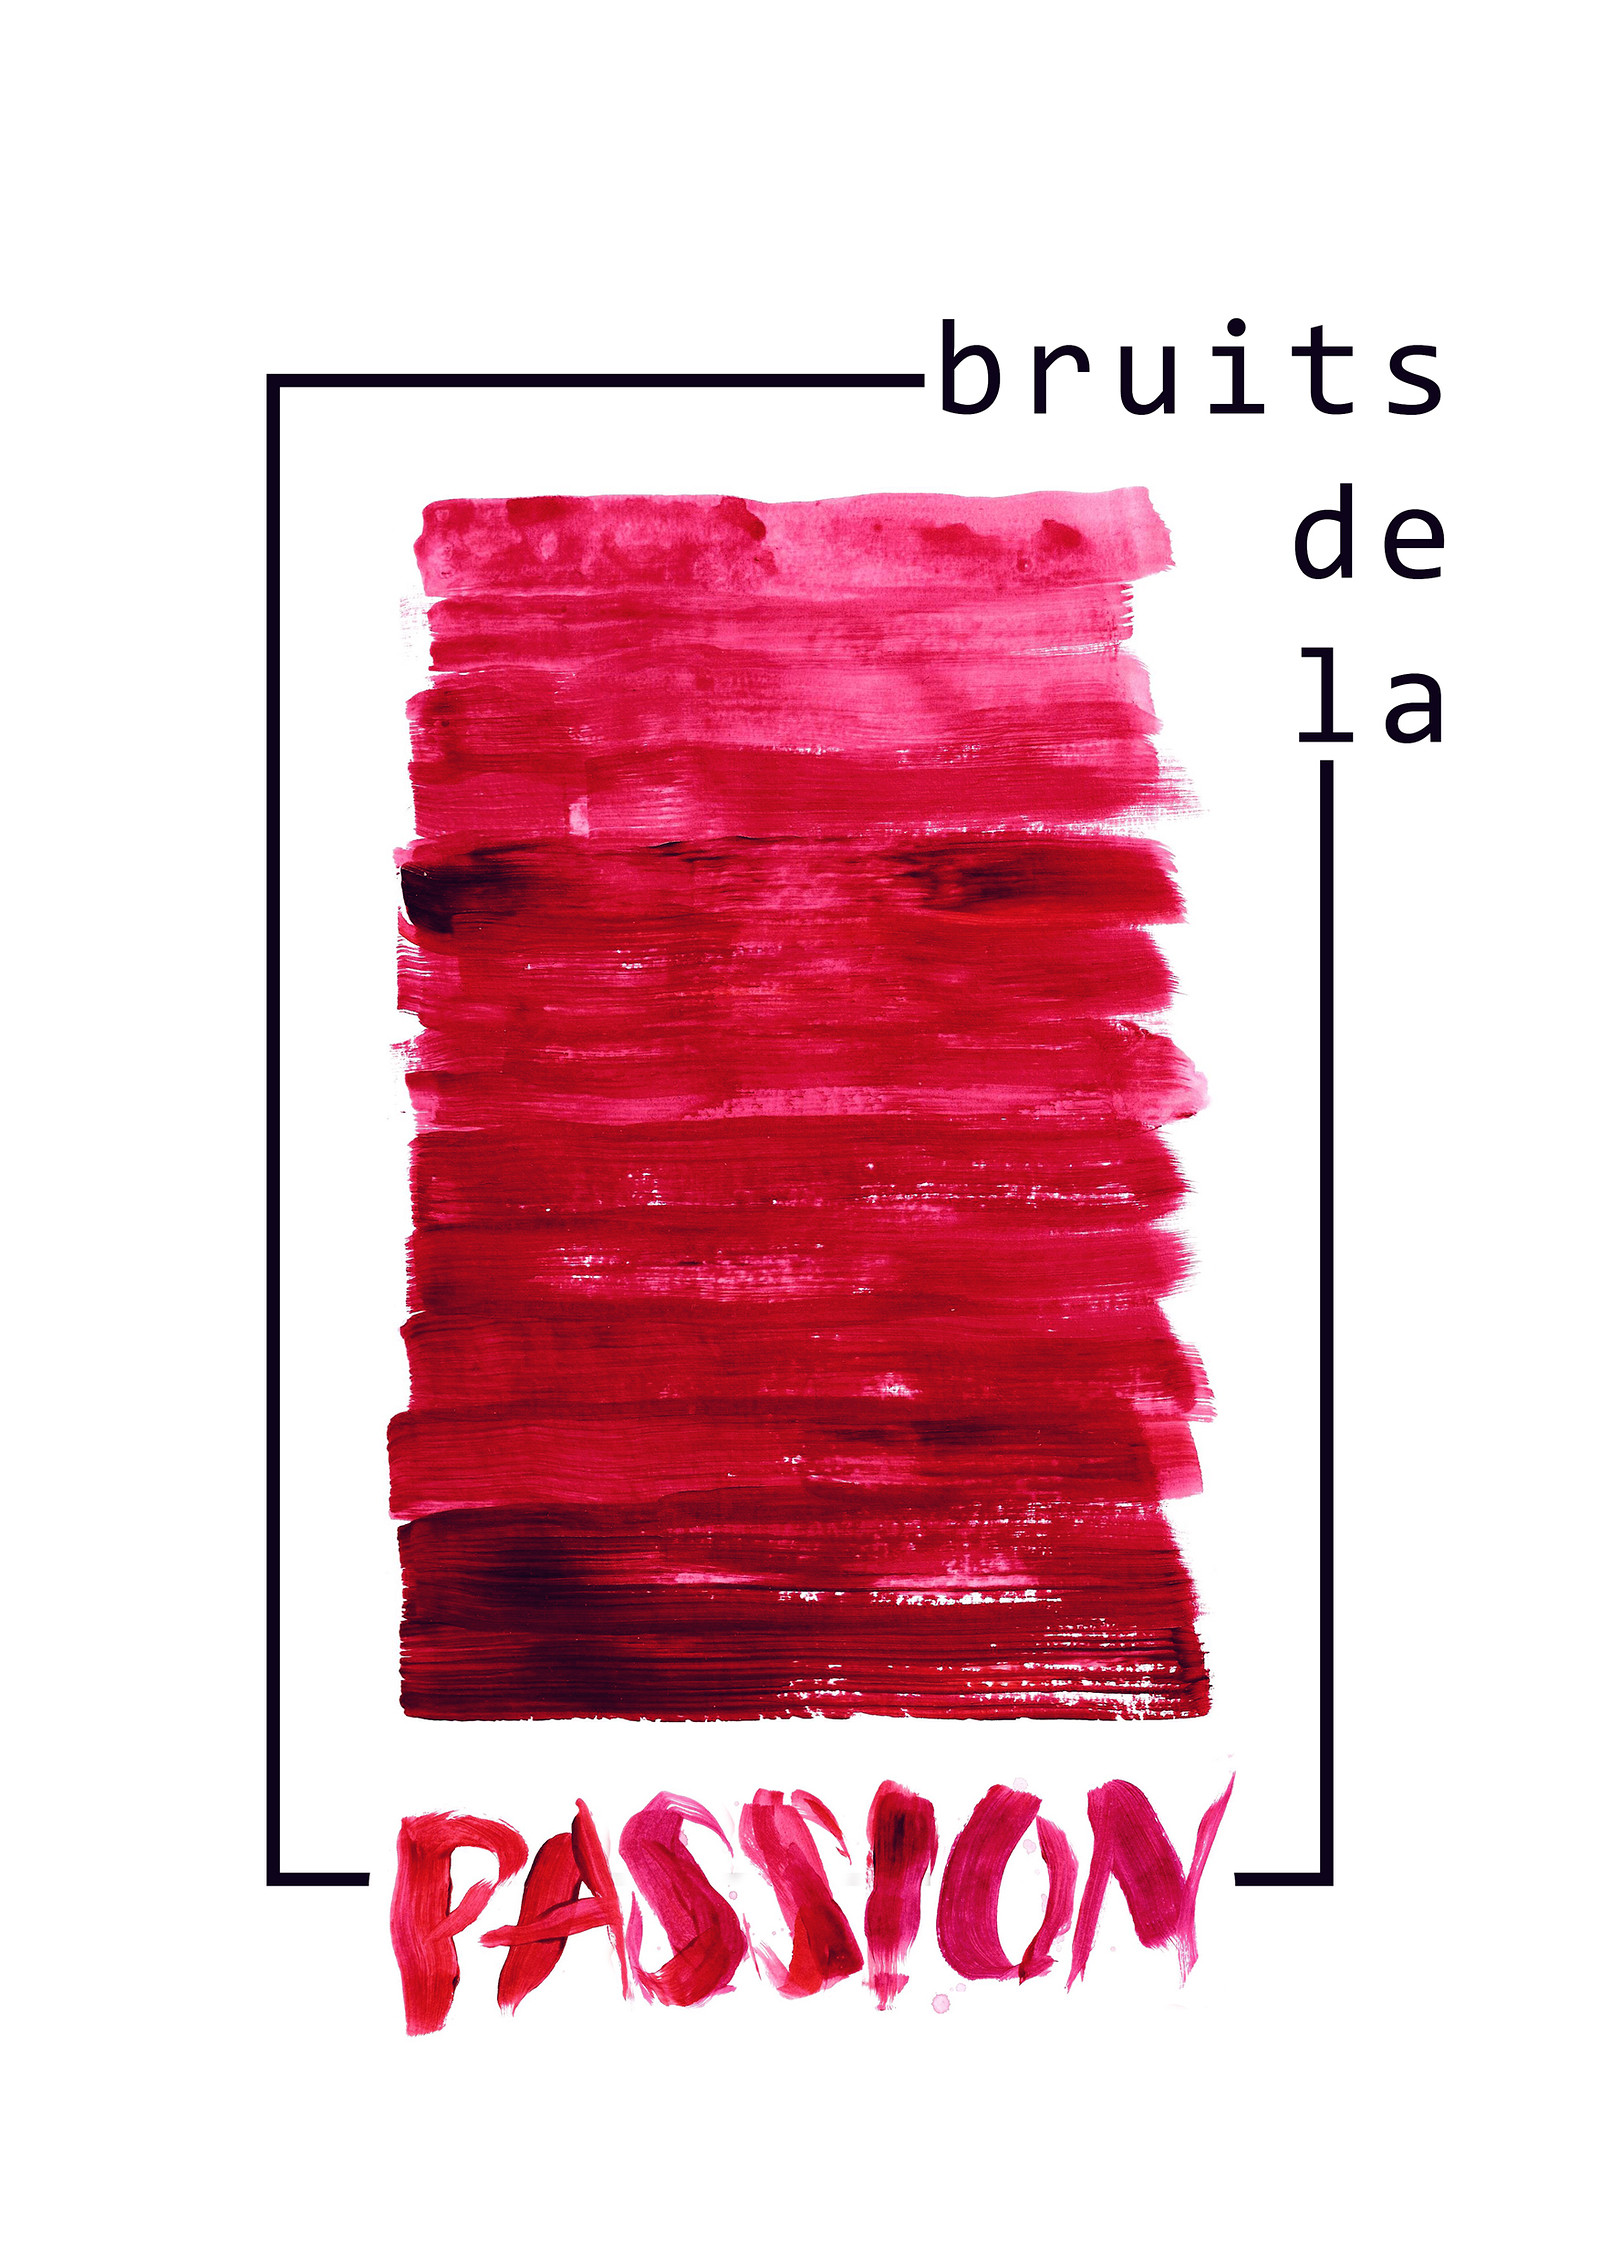 ETN x The Latch w/ Bruits de la Passion at Venue TBA